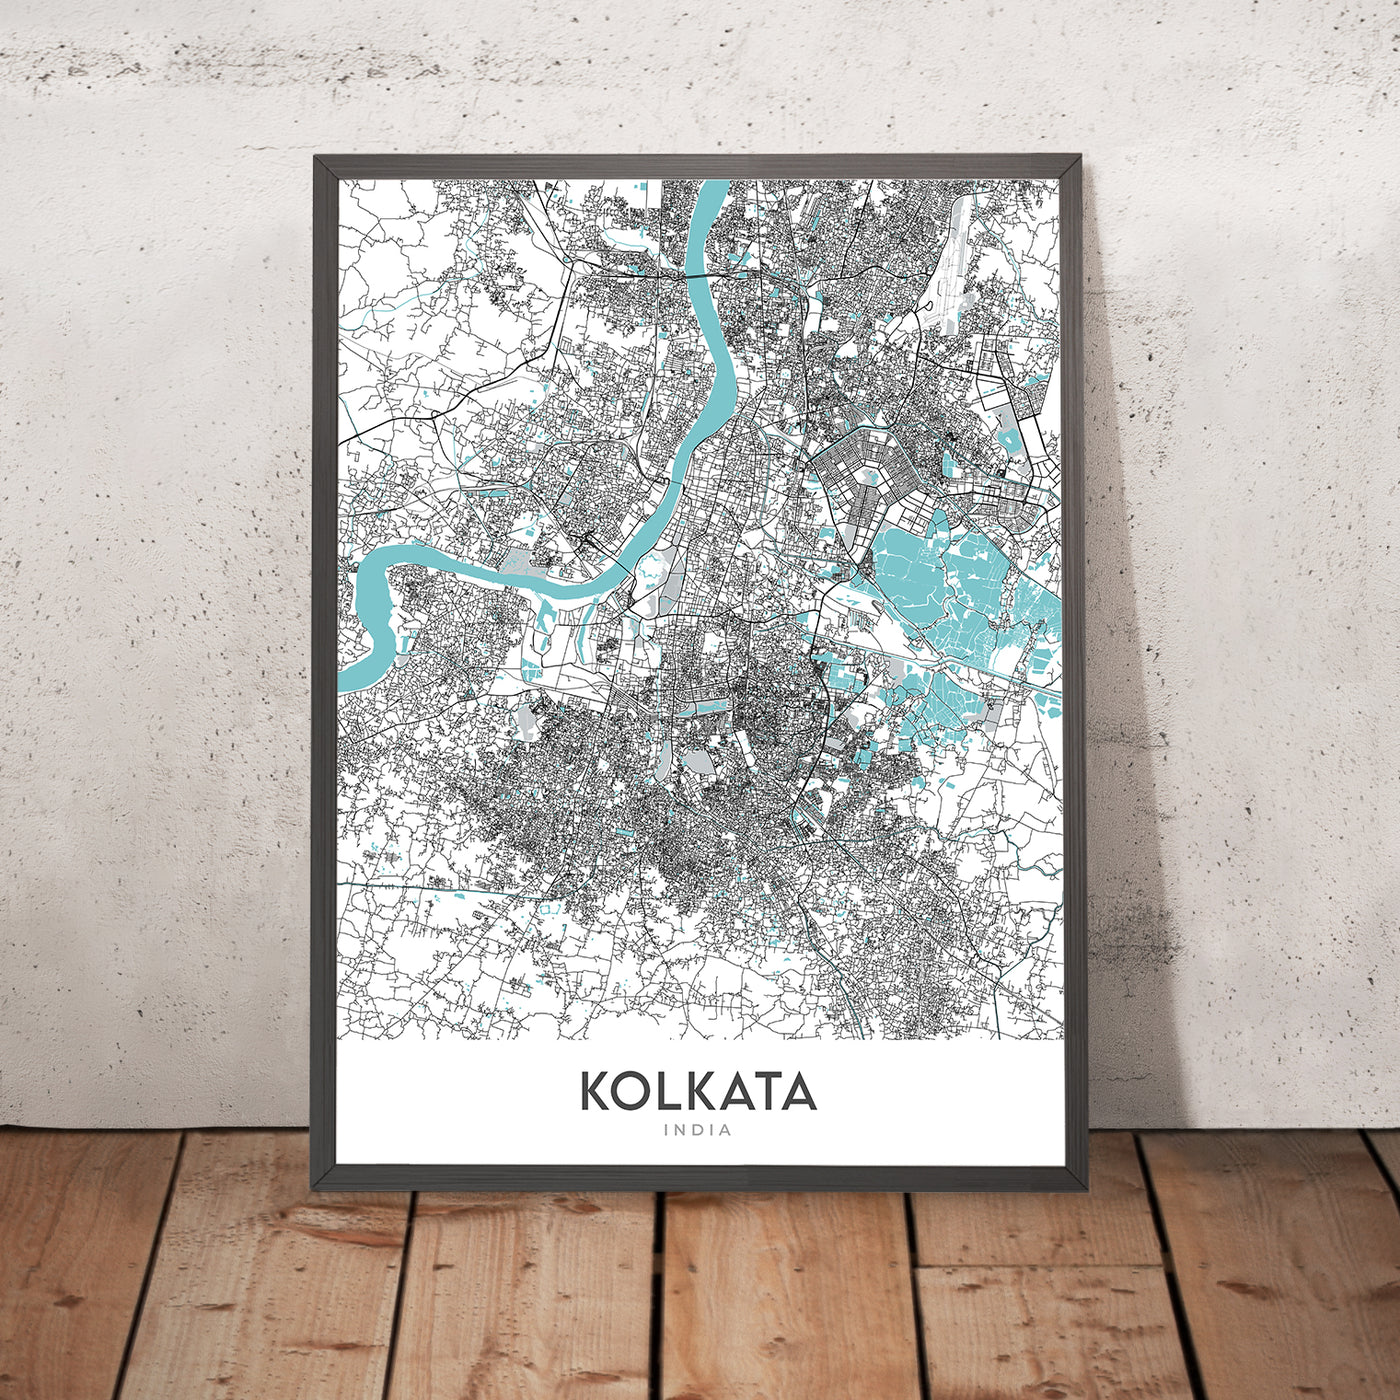 Moderner Stadtplan von Kalkutta, Indien: Victoria Memorial, Kalighat-Tempel, Park St, Ballygunge, Alipore